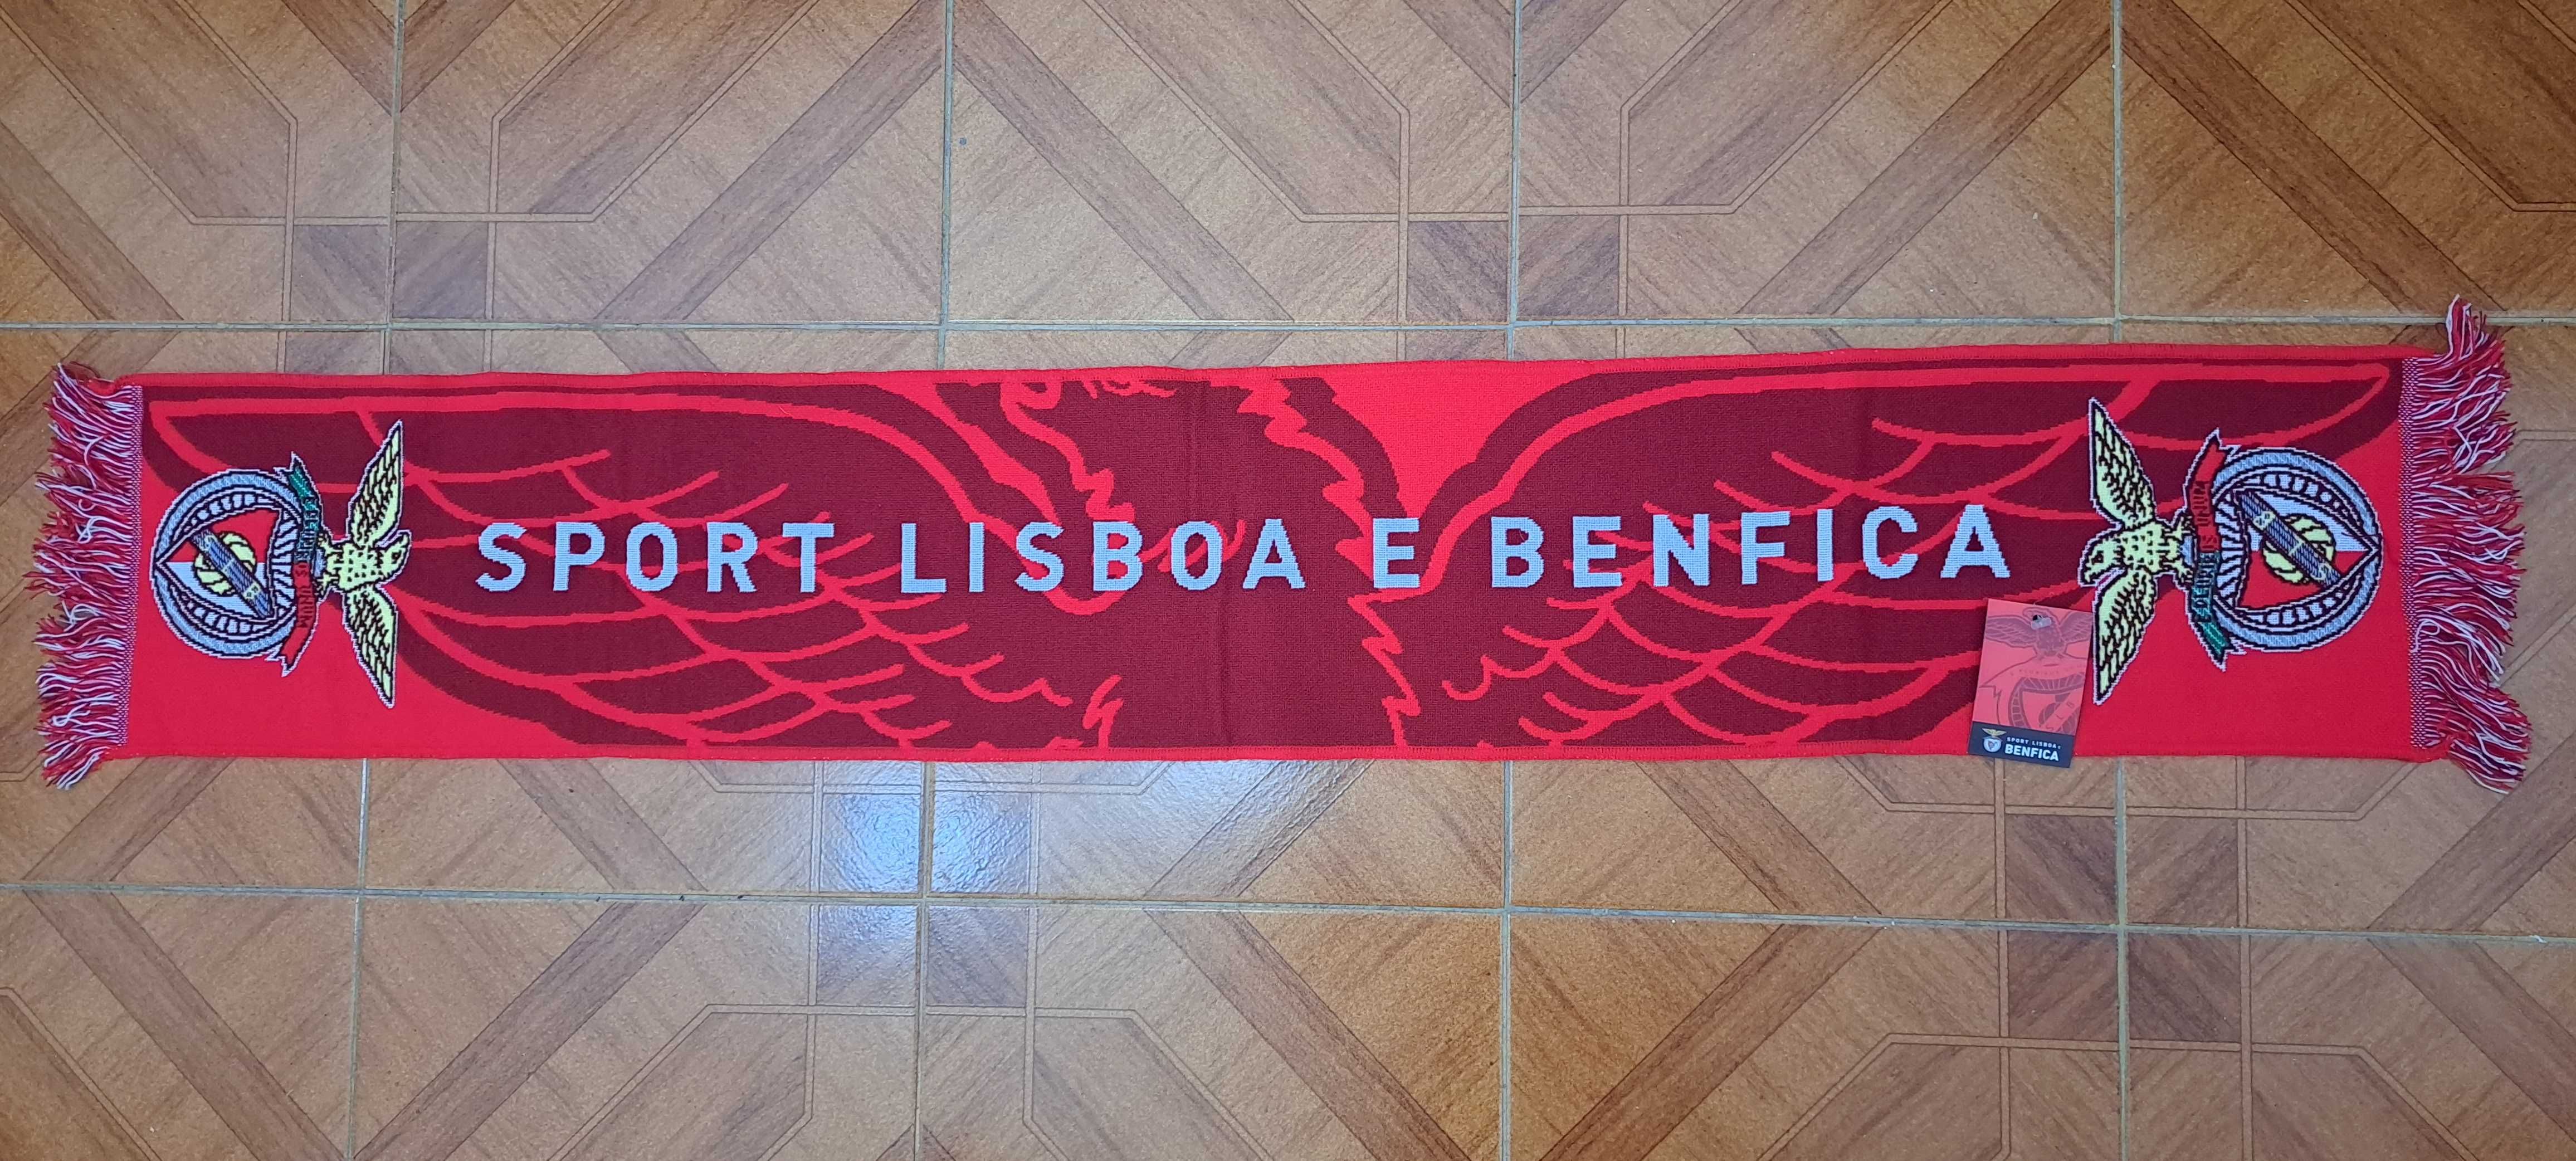 Cachecol do Sport Lisboa e Benfica - Sport Lisboa e Benfica